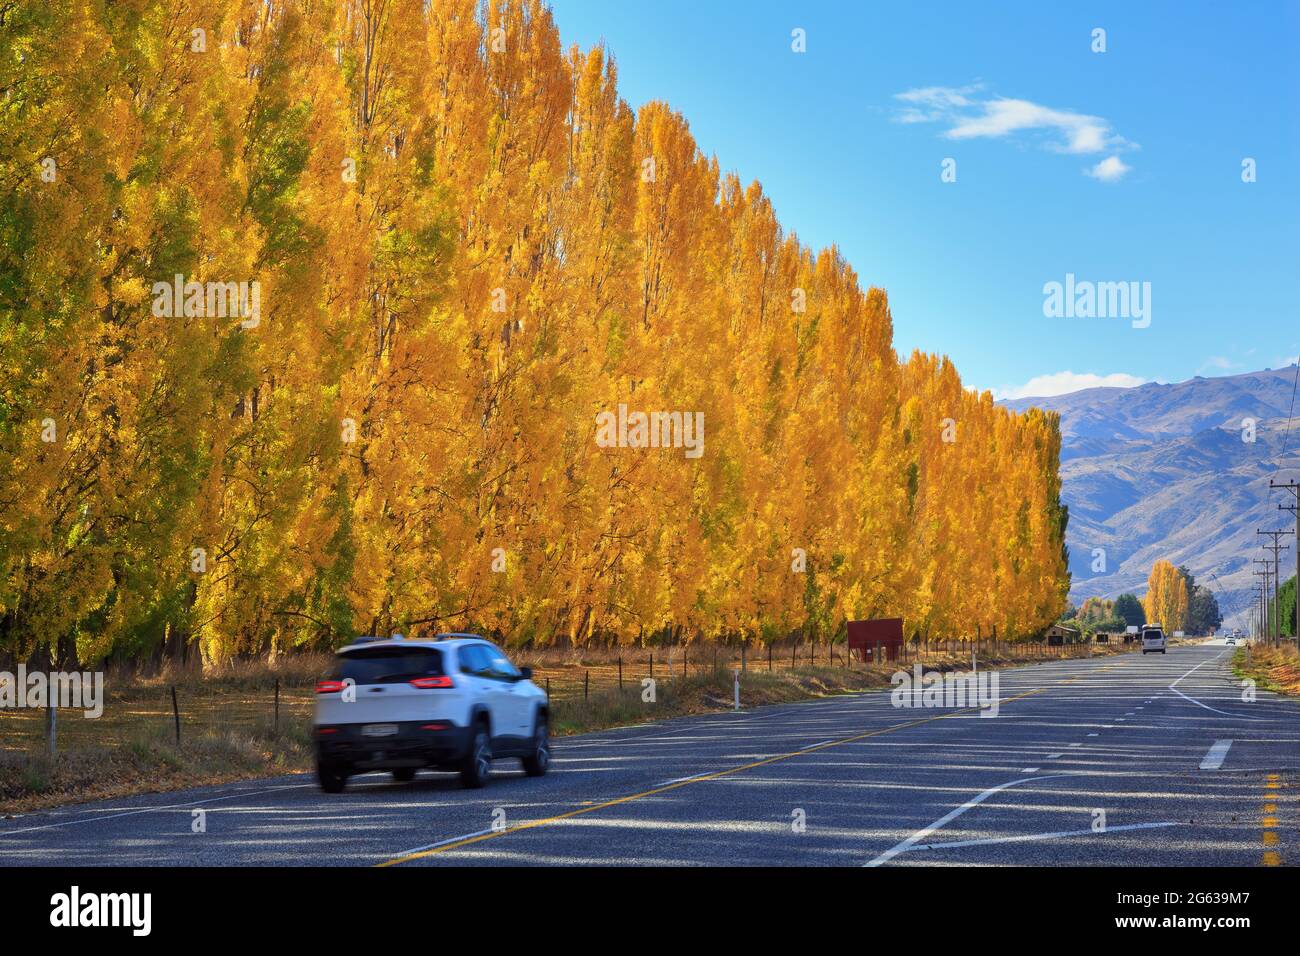 Une rangée de peupliers à feuillage d'automne doré à côté d'une route dans la région d'Otago, Île du Sud, Nouvelle-Zélande Banque D'Images